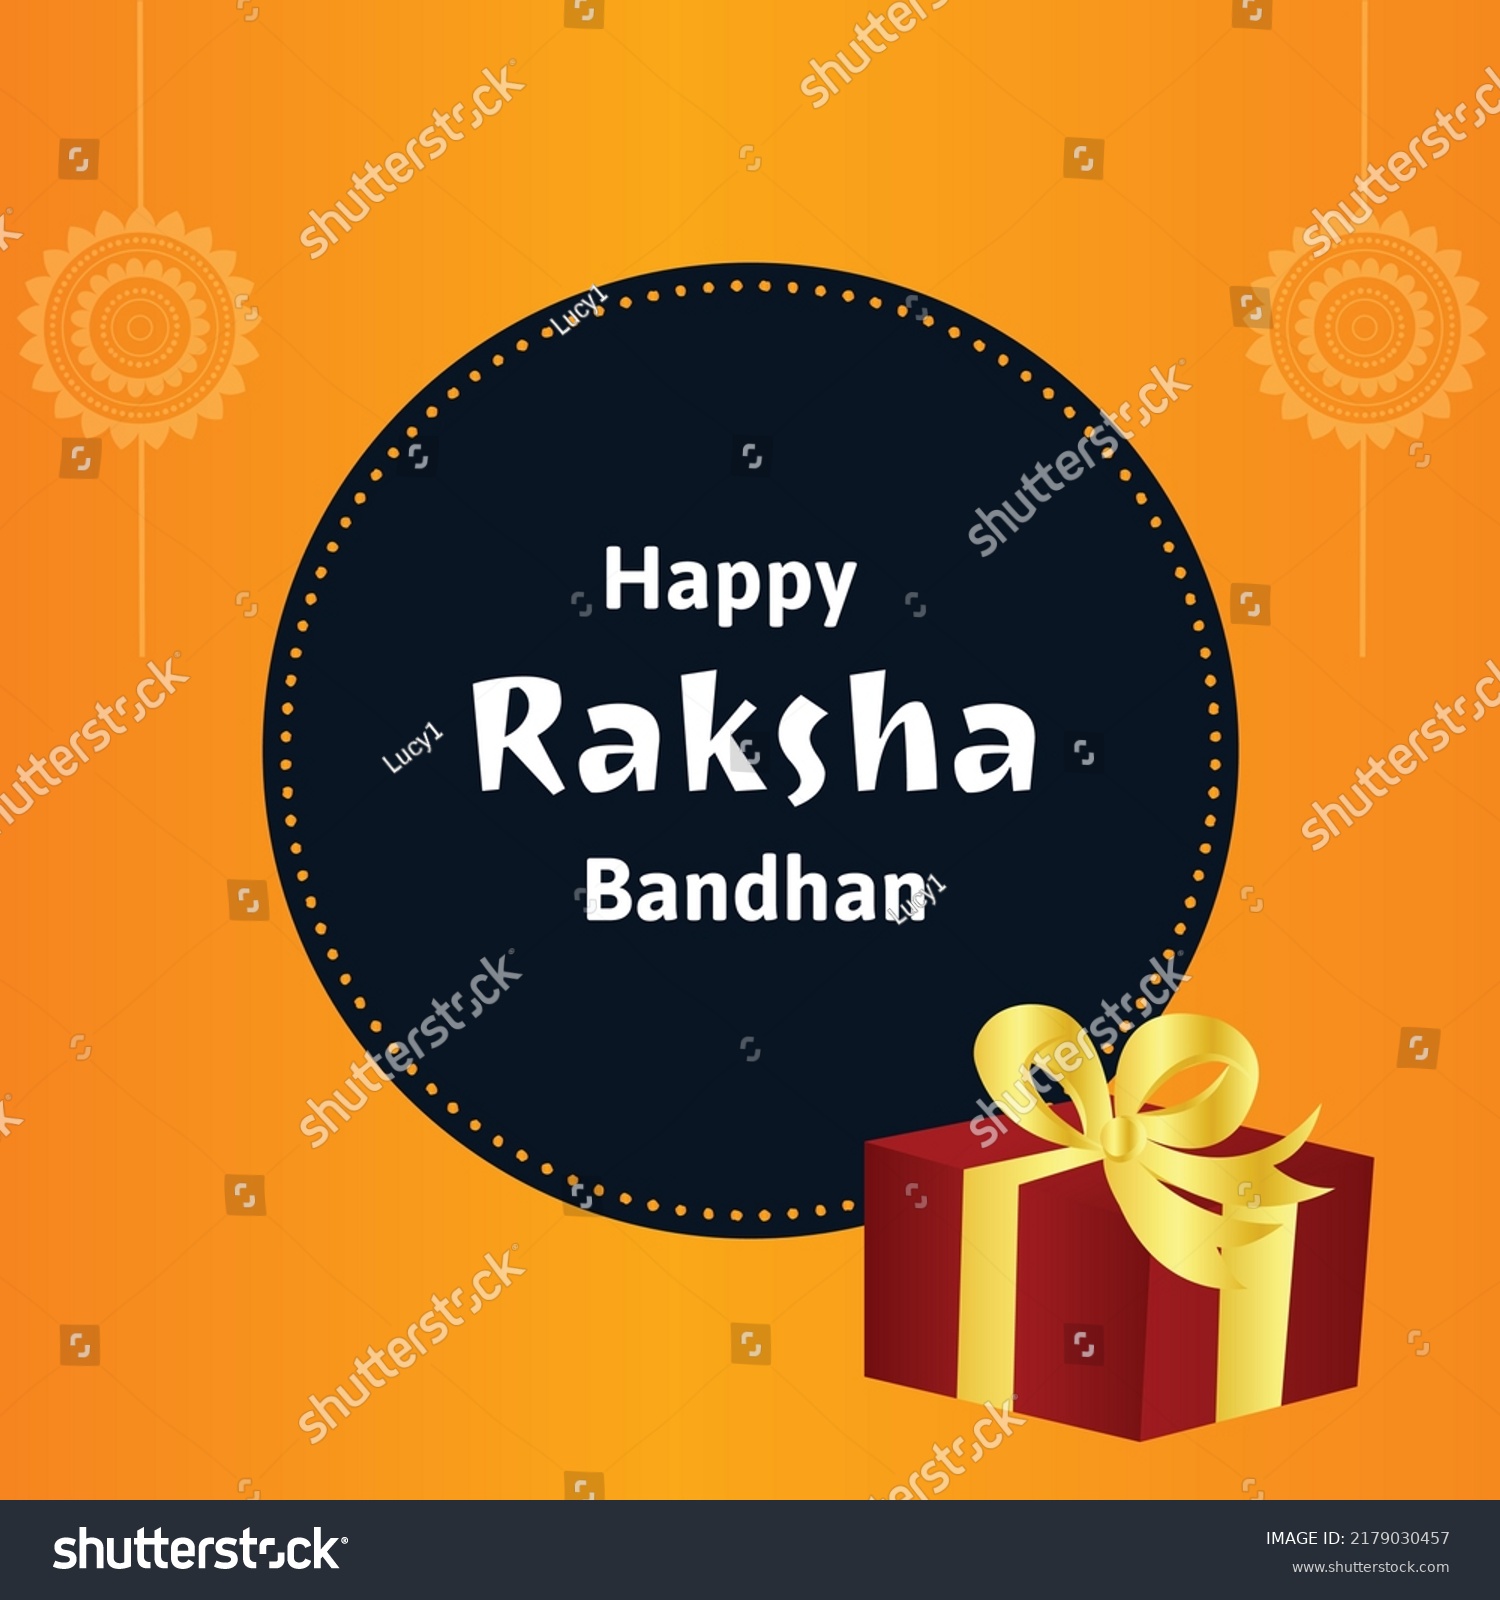 SVG of Happy Raksha Bandhan Indian Hindu Festival Celebration Vector Illustrations With Creative Background svg